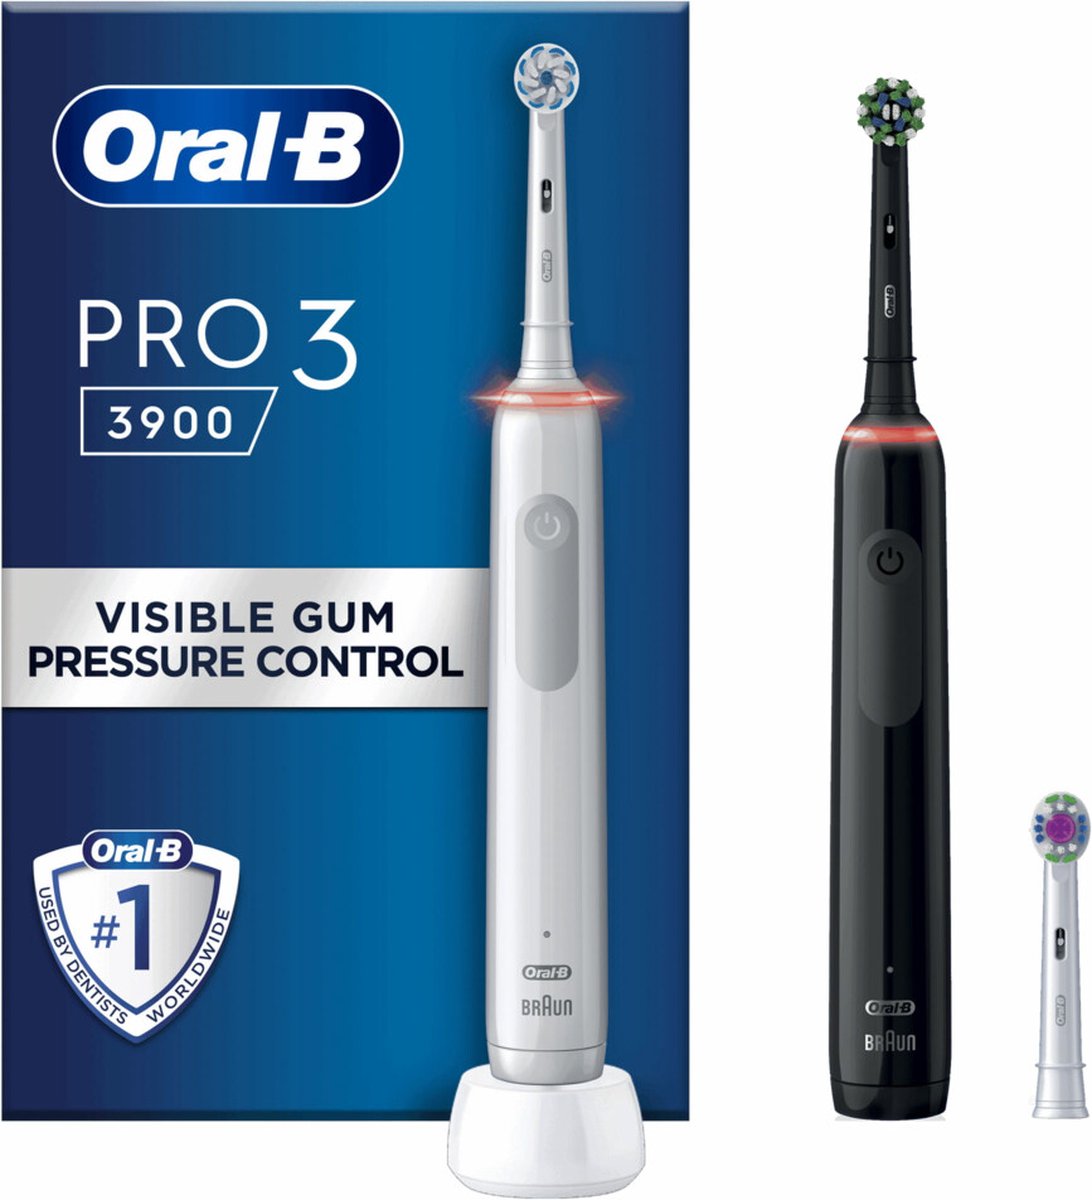 Oral-B Pro 3 3900 - Duo - Elektrische Tandenborstel - Zwart & Wit - Oral B